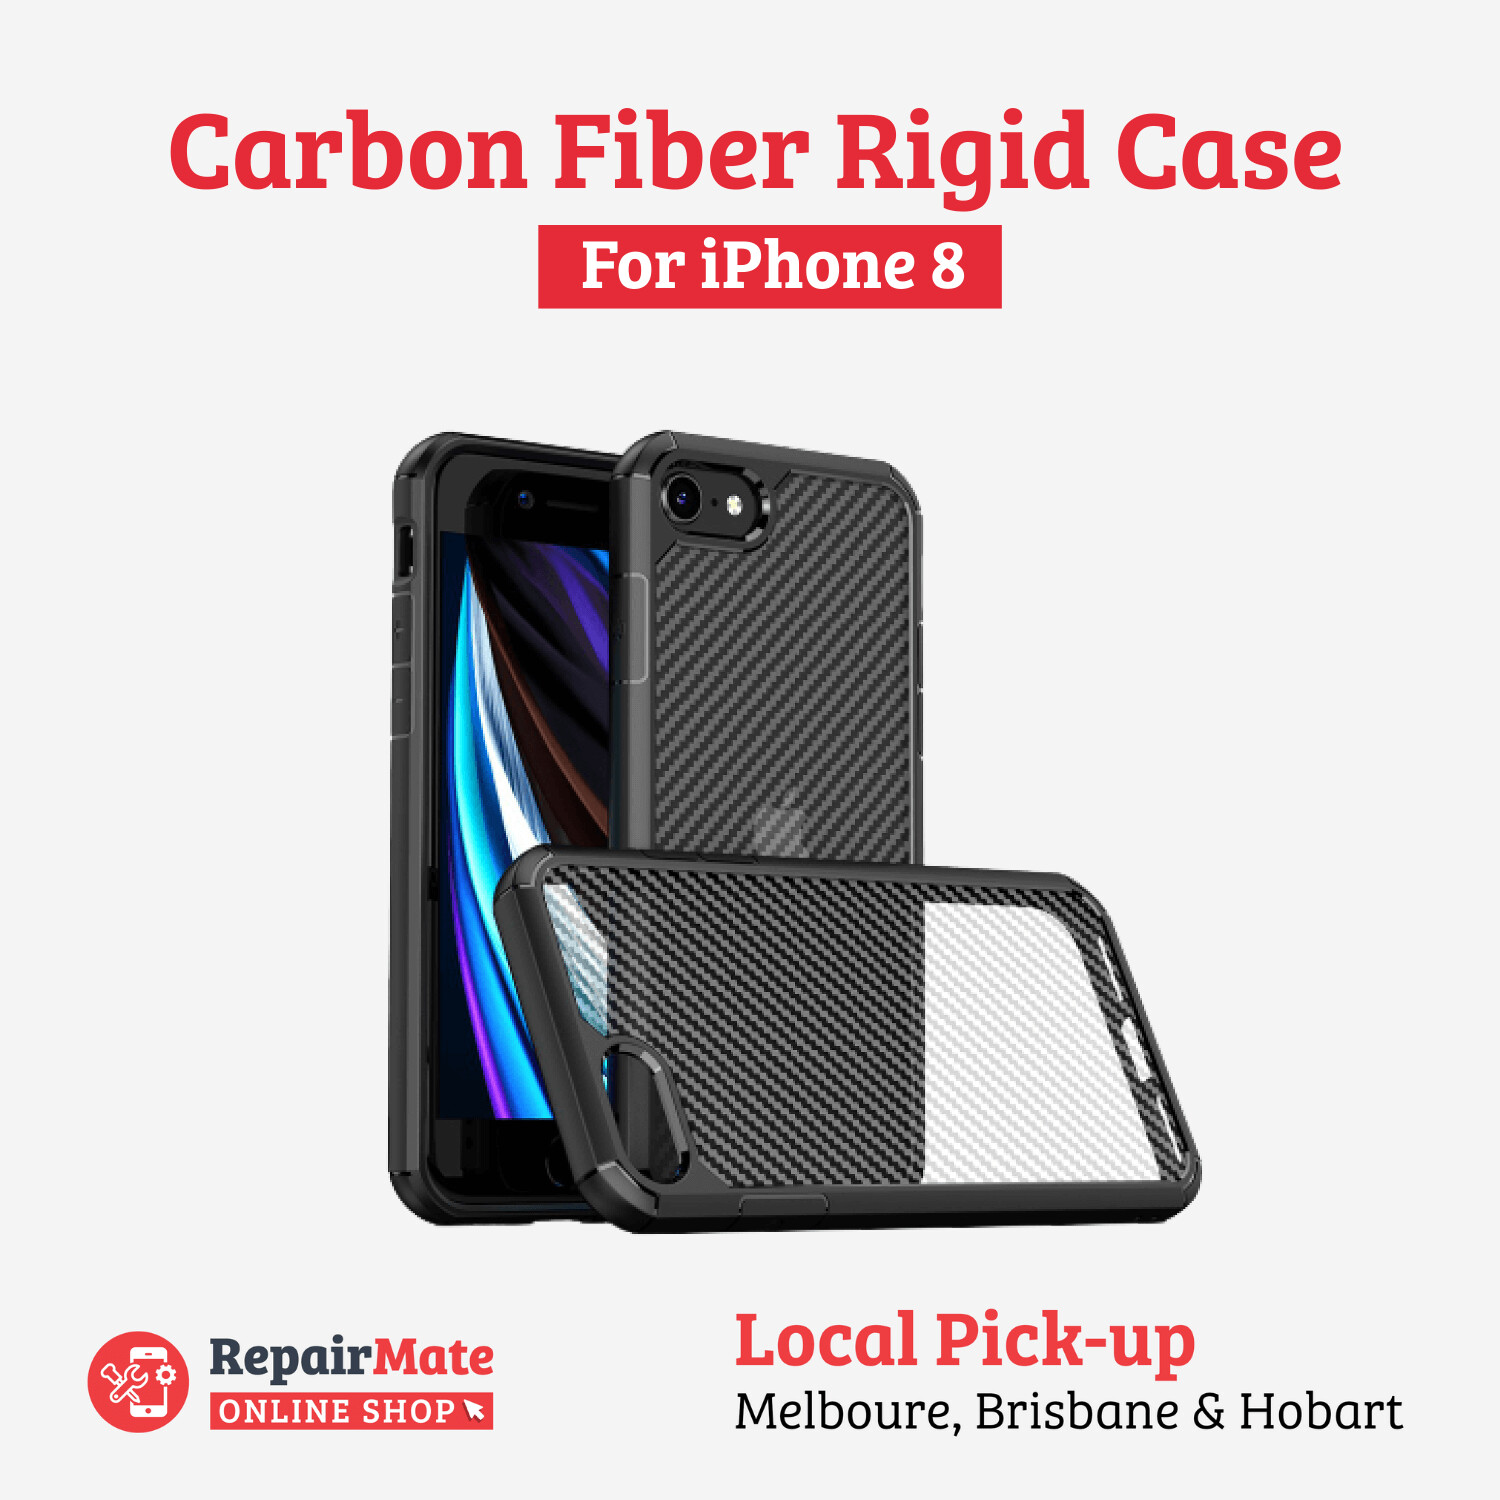 iPhone 8 Carbon Fiber Rigid Case Cover